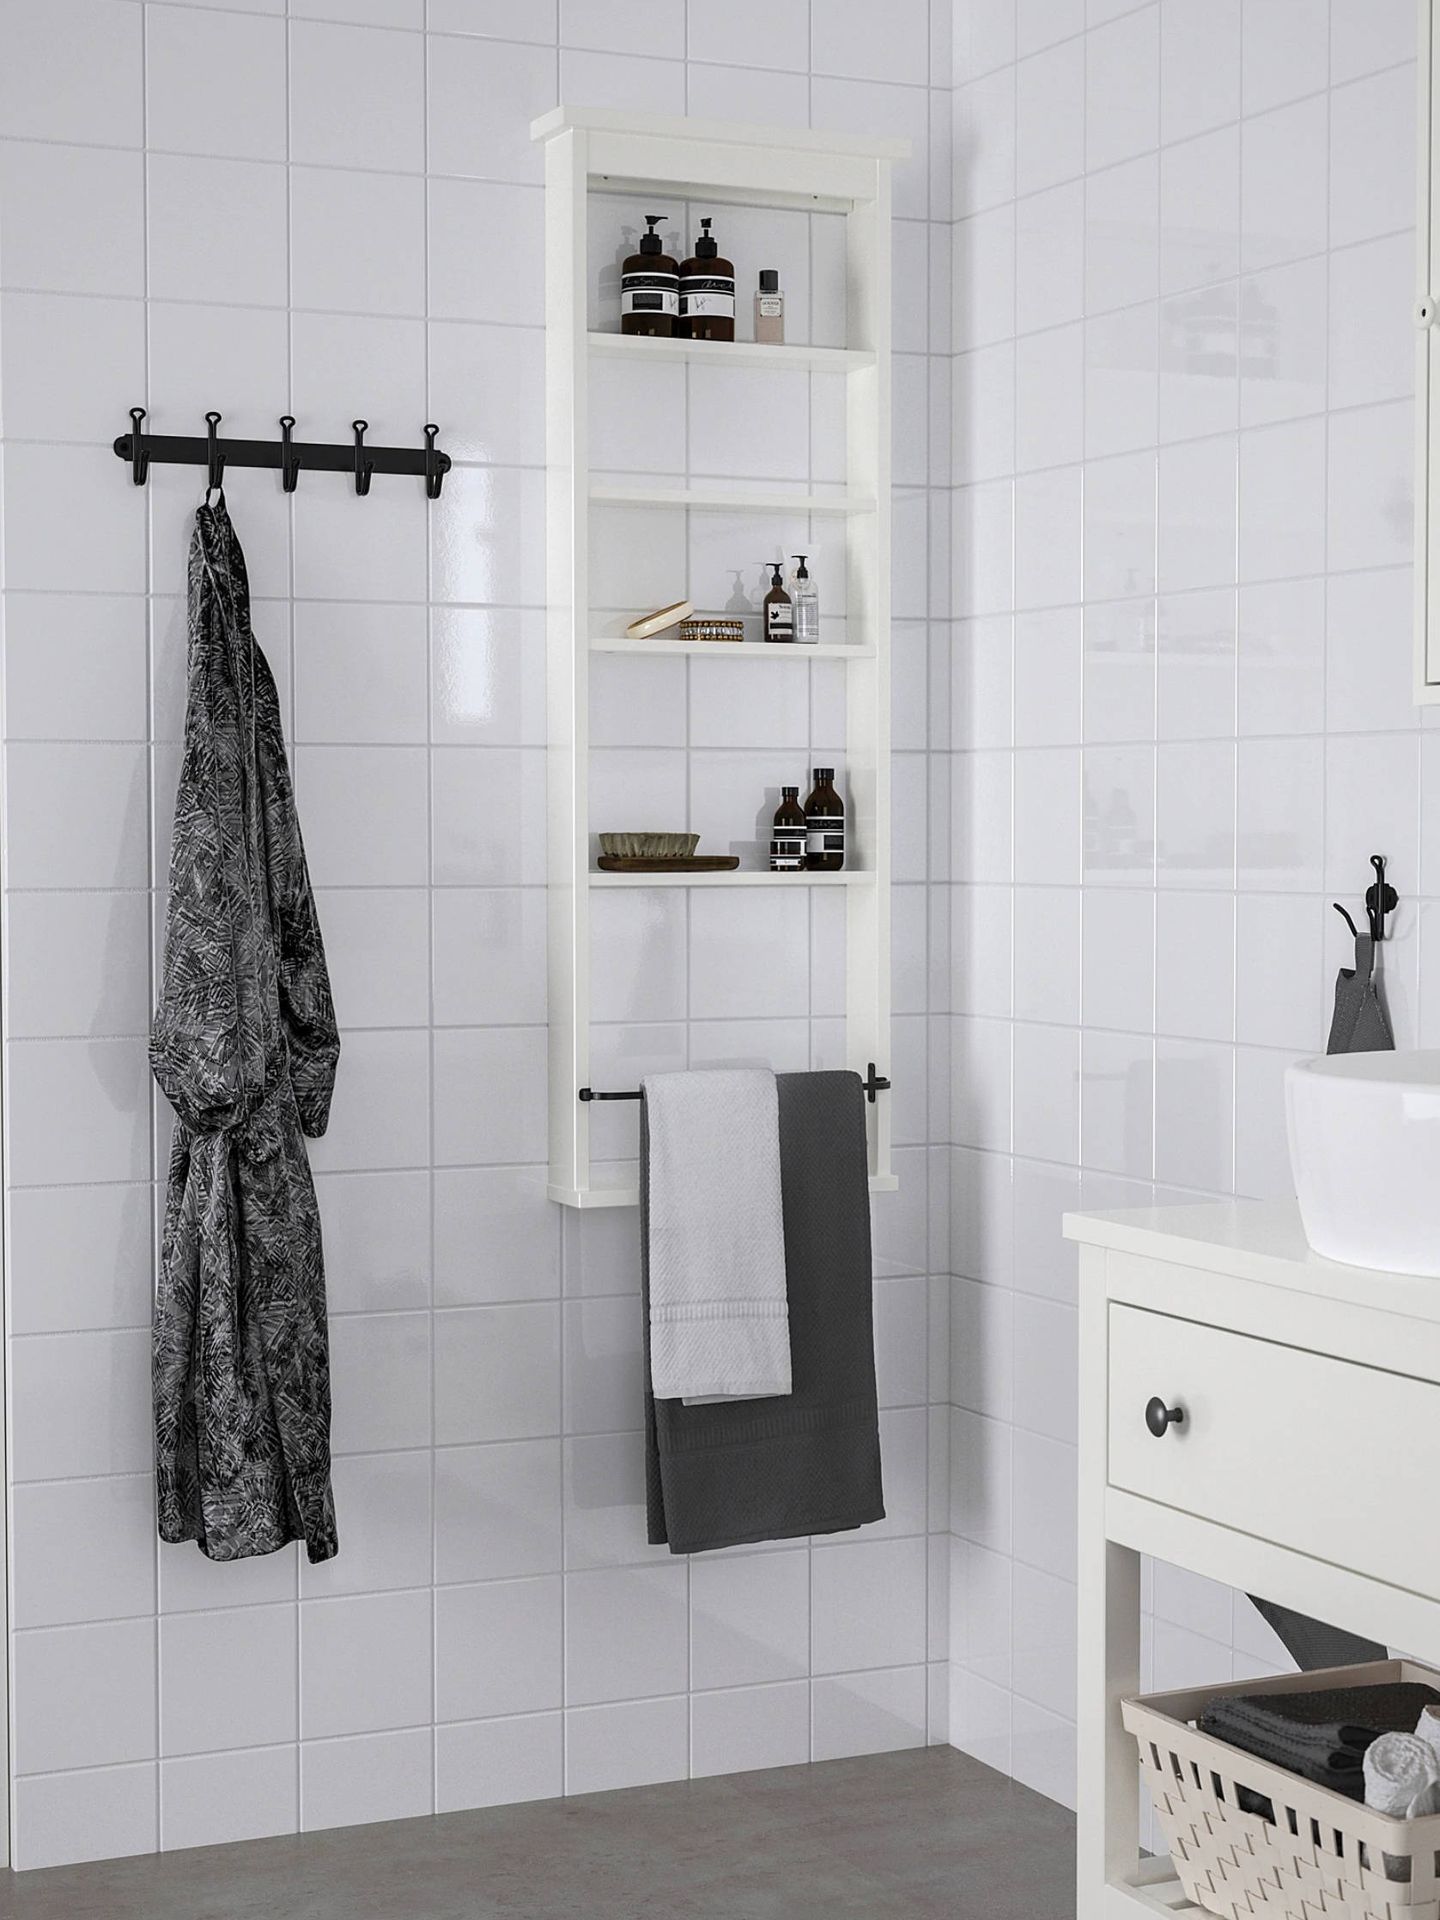 Un baño pequeño con espacio todo es posible muebles de Ikea